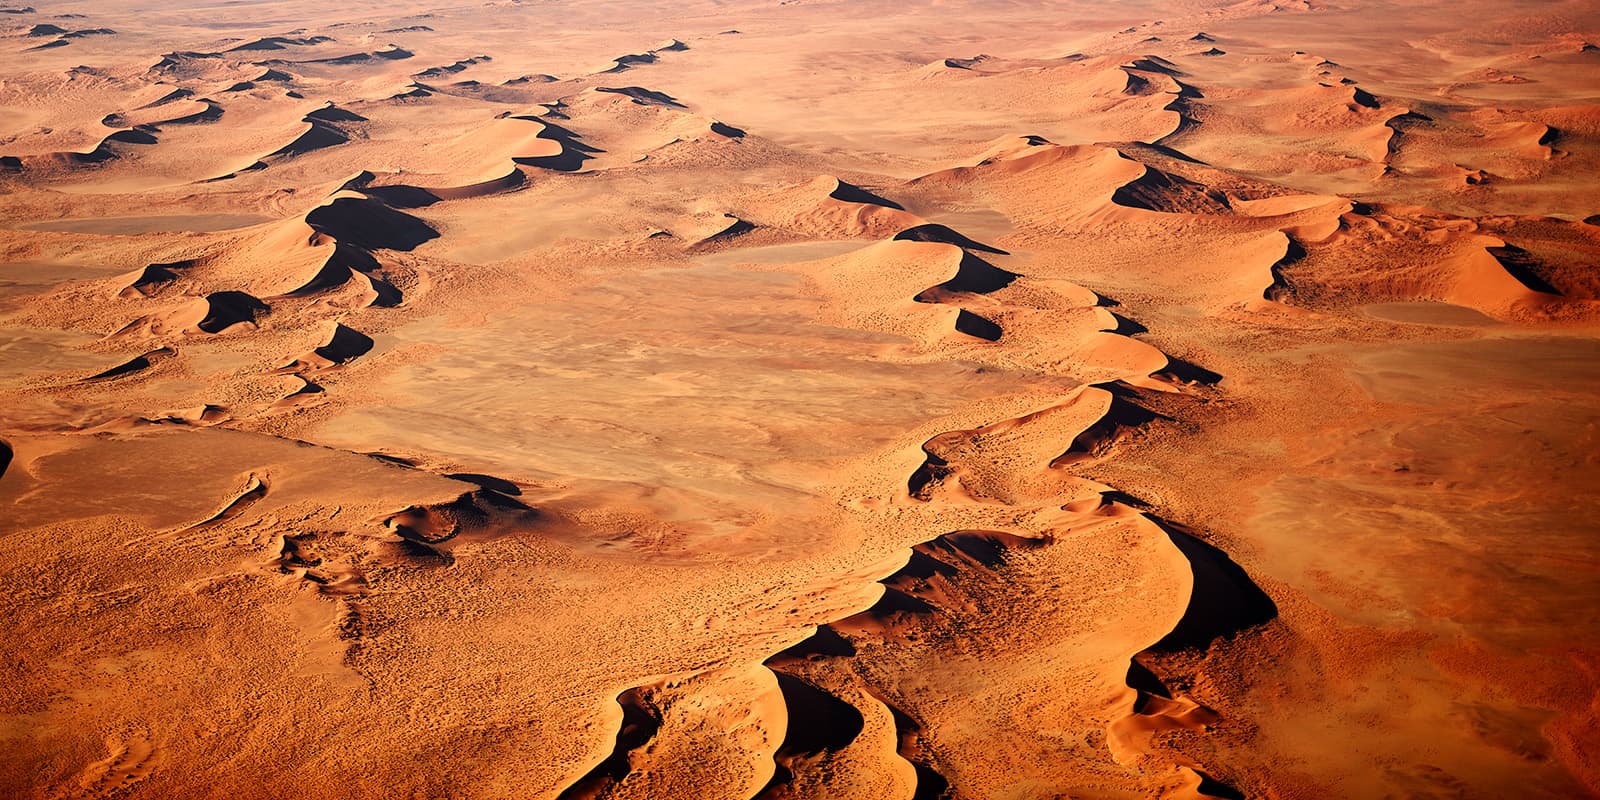 "Terra Cimmeria" Luftbild der Wüste Namibias - Farbspiel in den schönsten Orangtönen